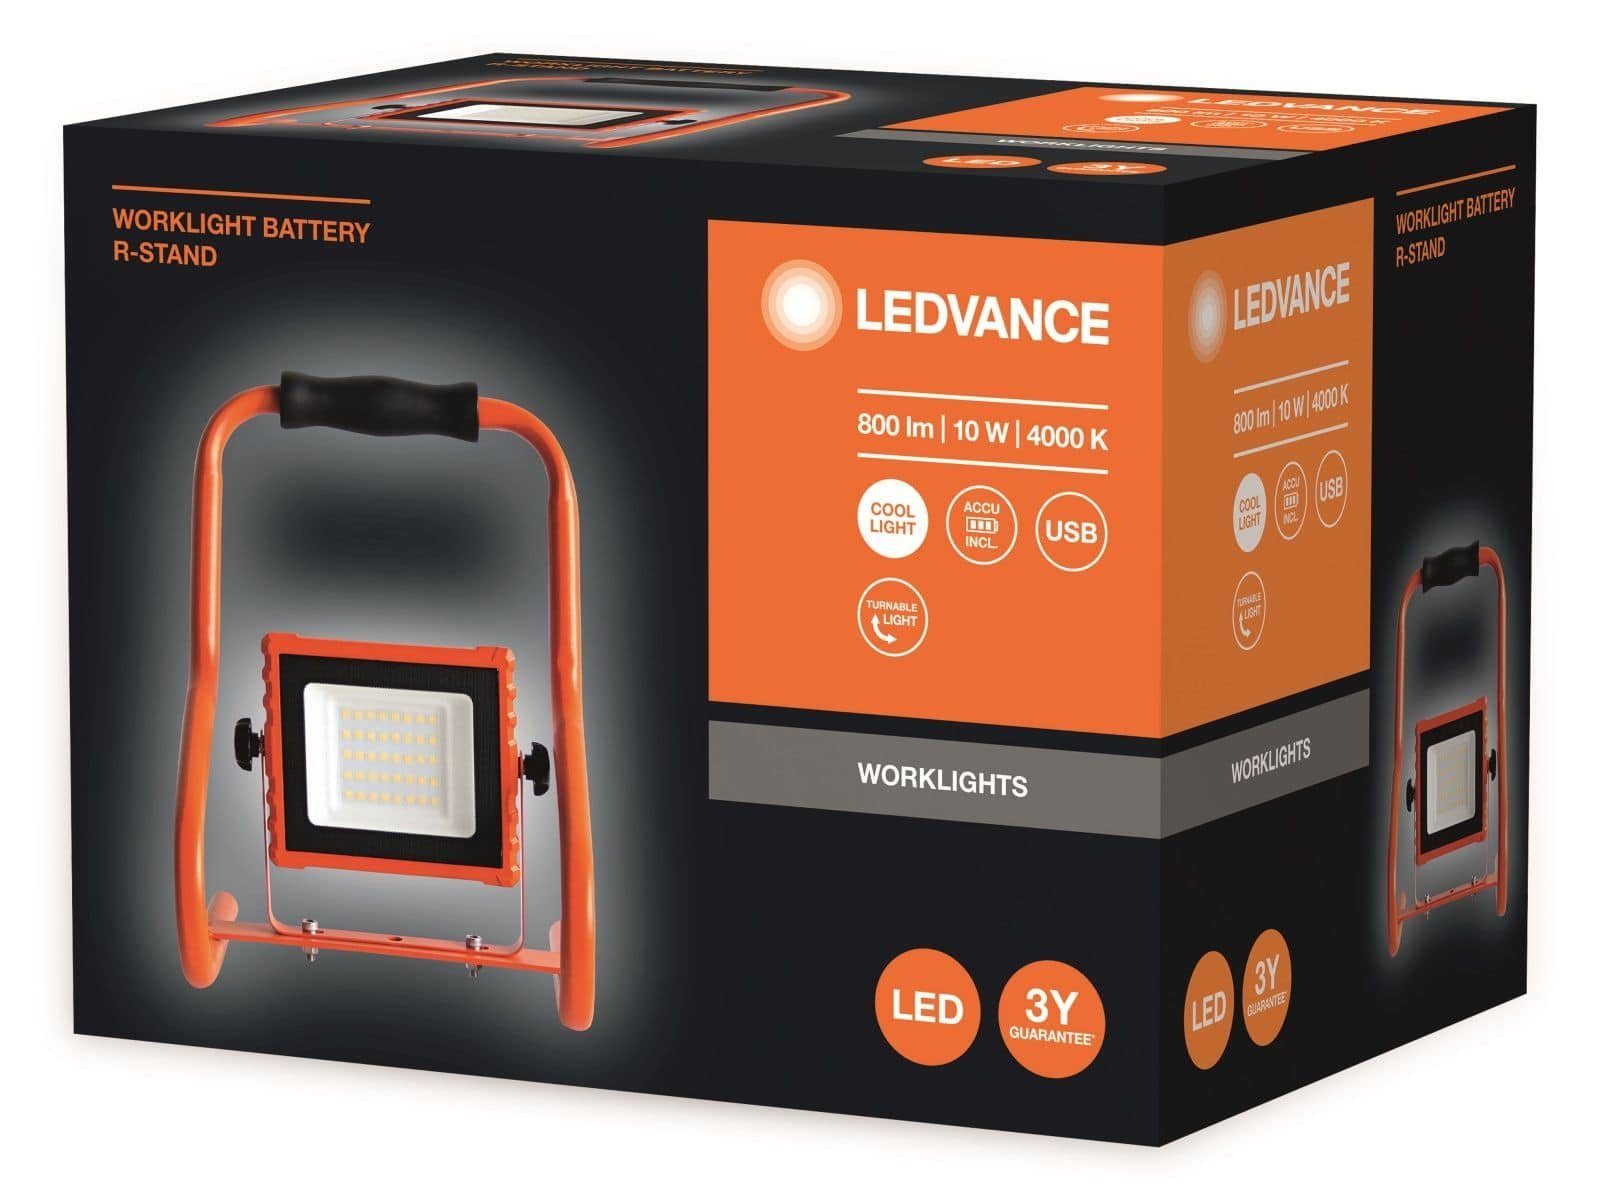 LEDVANCE LED-Baustrahler, 10W, Ledvance 800lm, Arbeitsleuchte 4000K